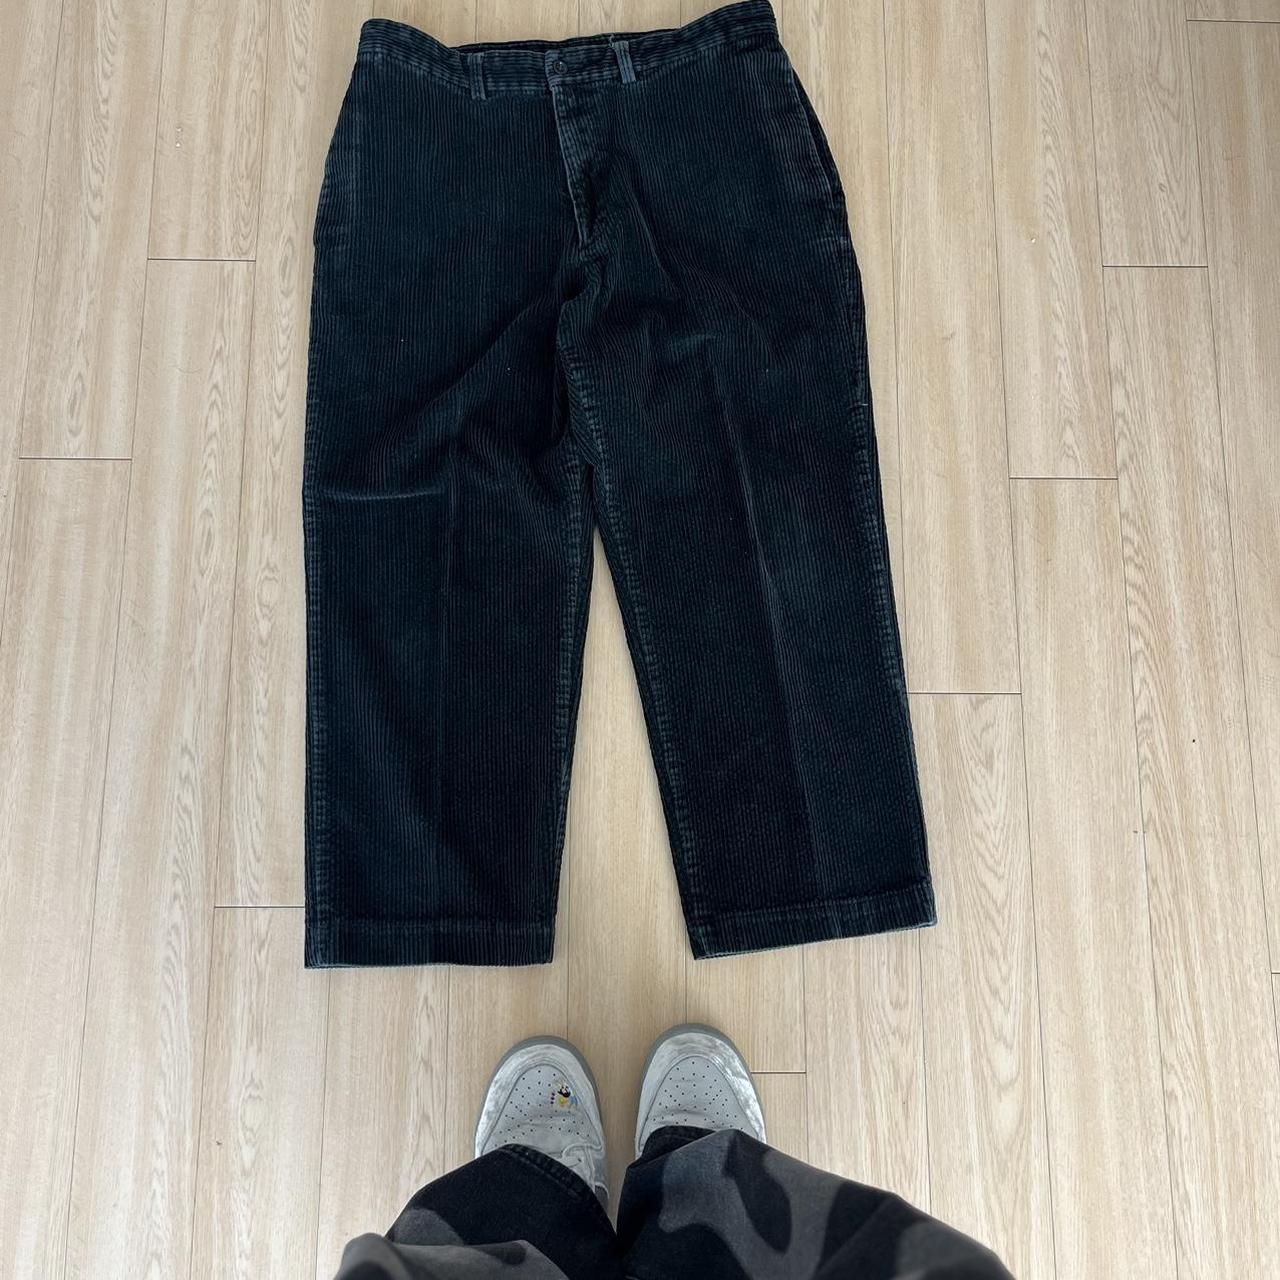 Khaki Men Trouser Pants, Slim Fit at Rs 240 in Howrah | ID: 2851881770591